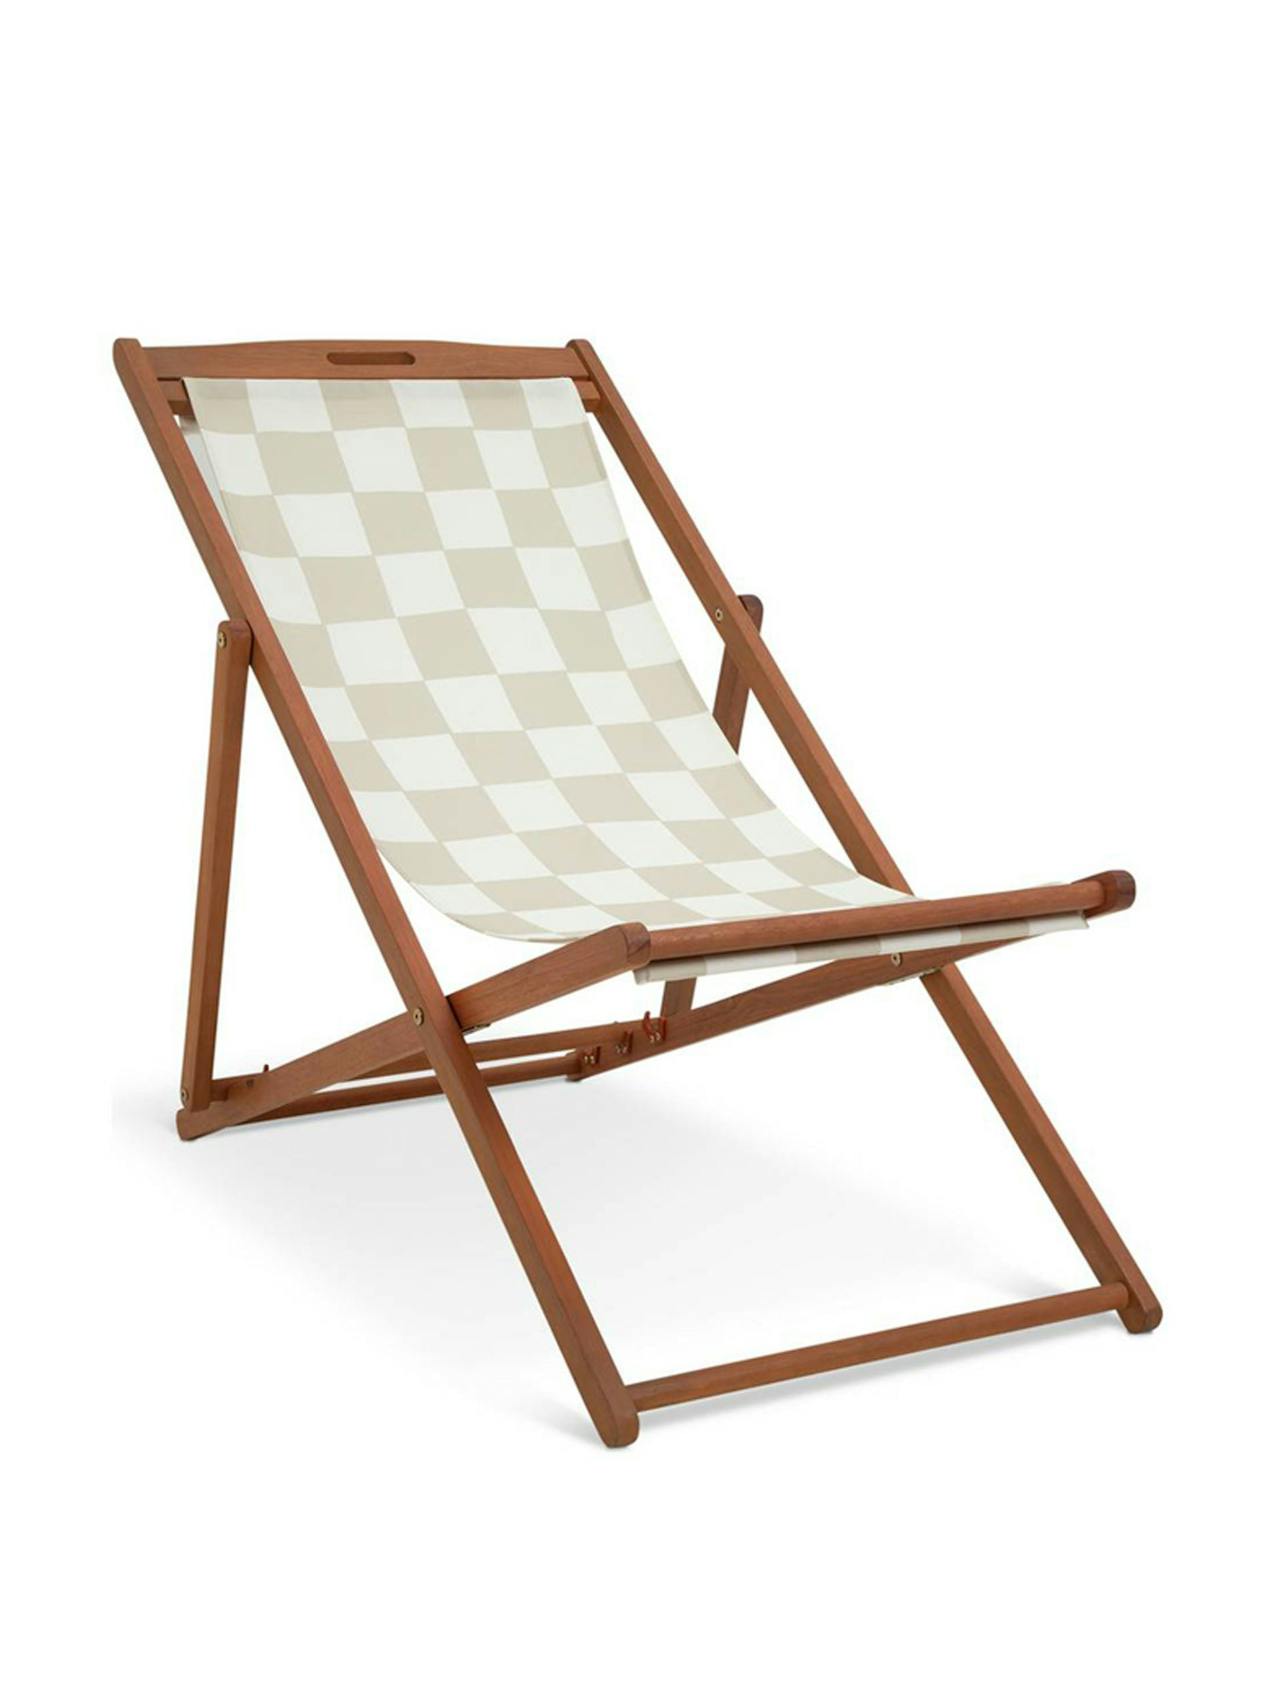 Folding wooden garden deck chair